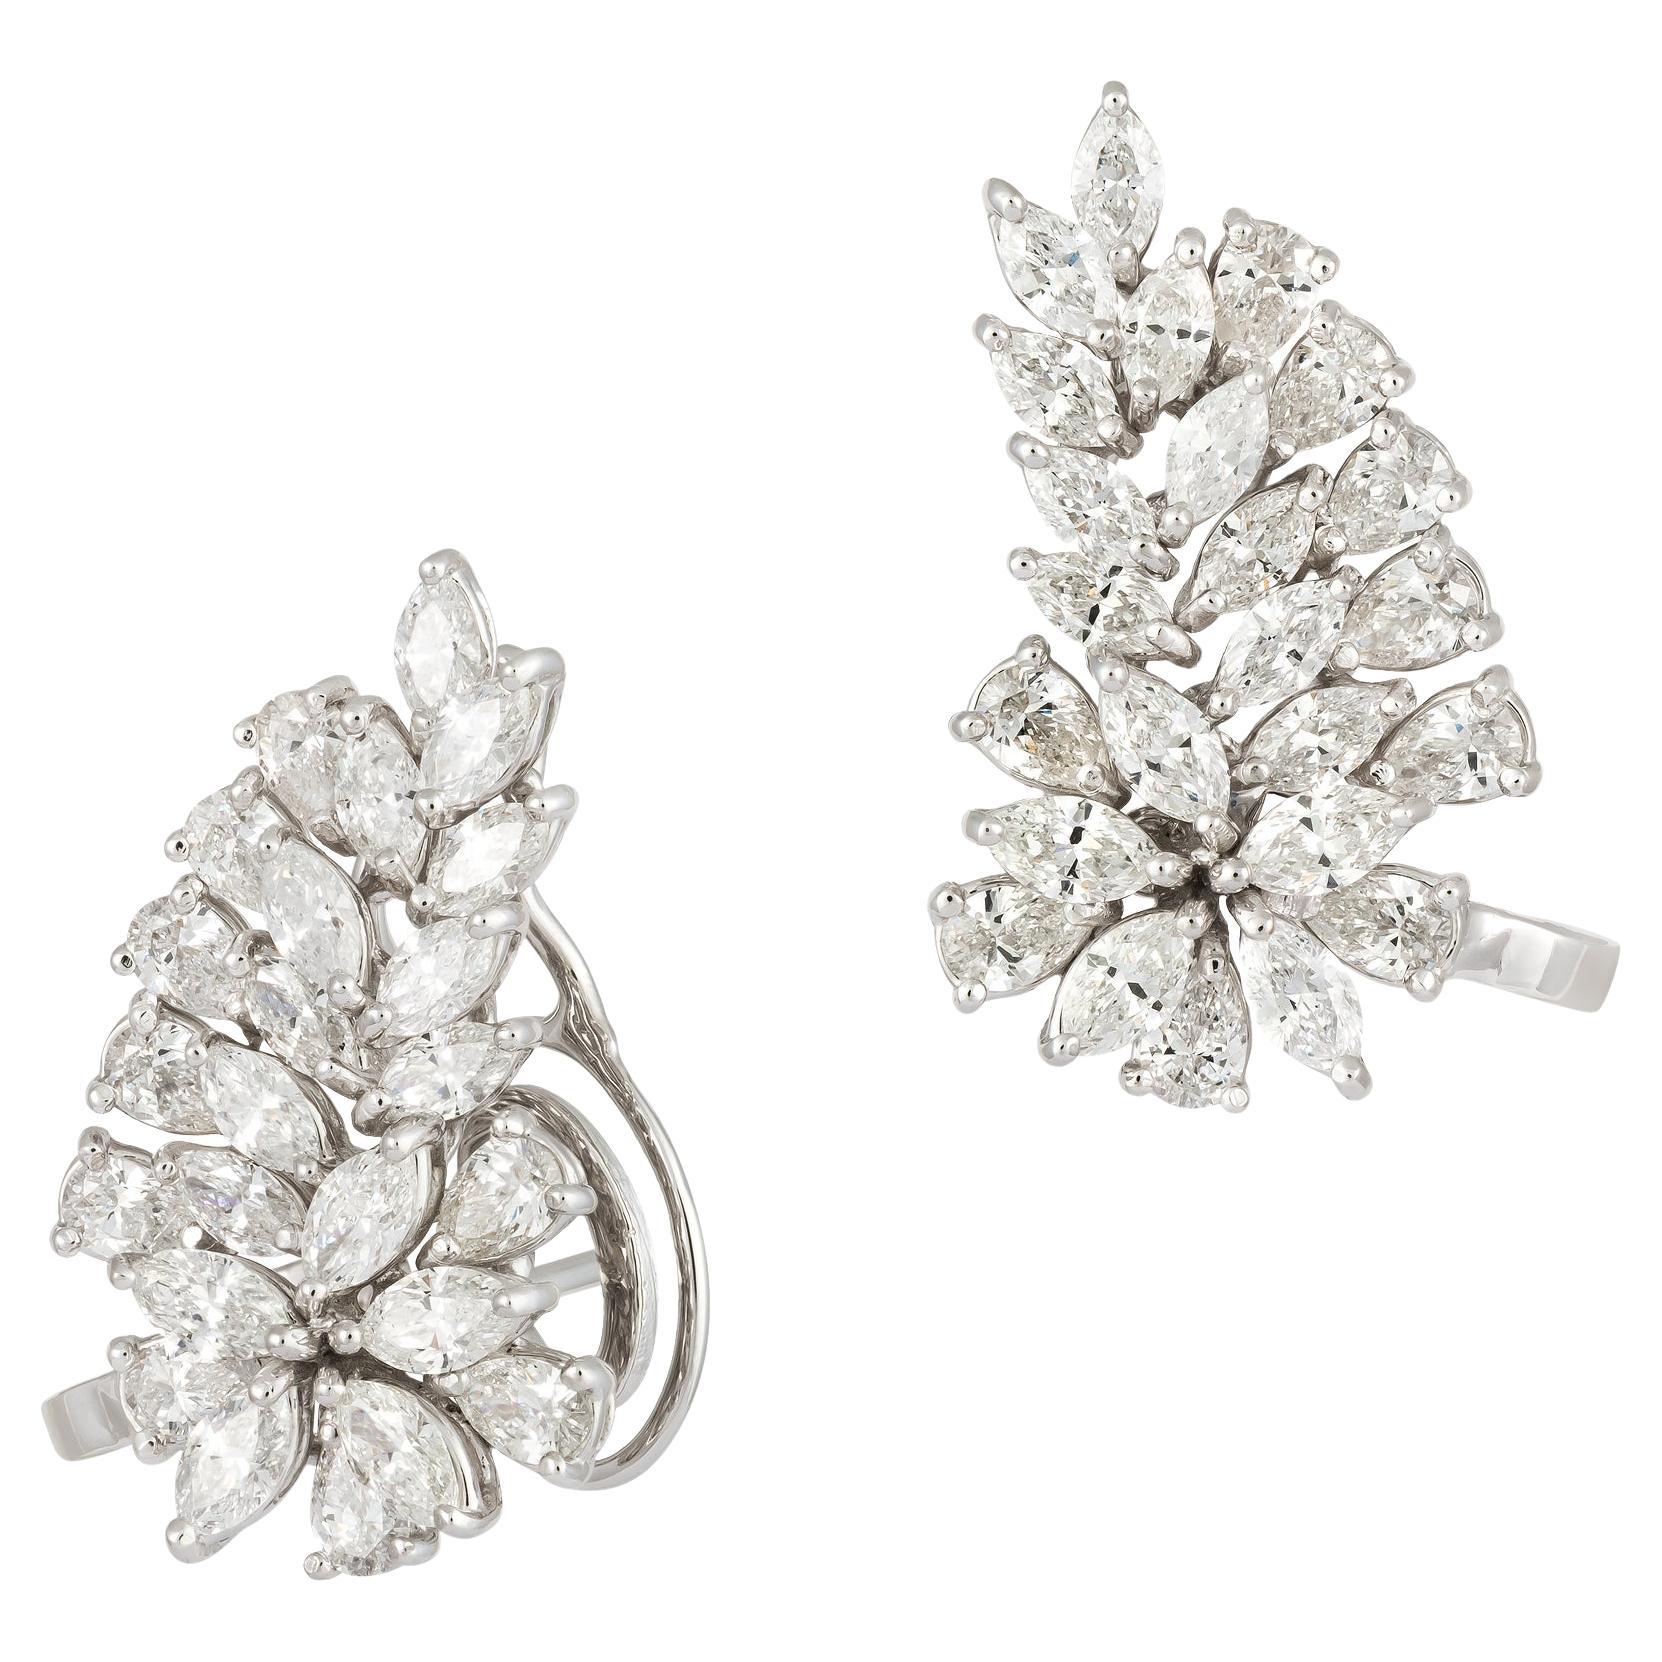 Breathtaking Studs White Gold 18K Earrings Diamond For Her For Sale